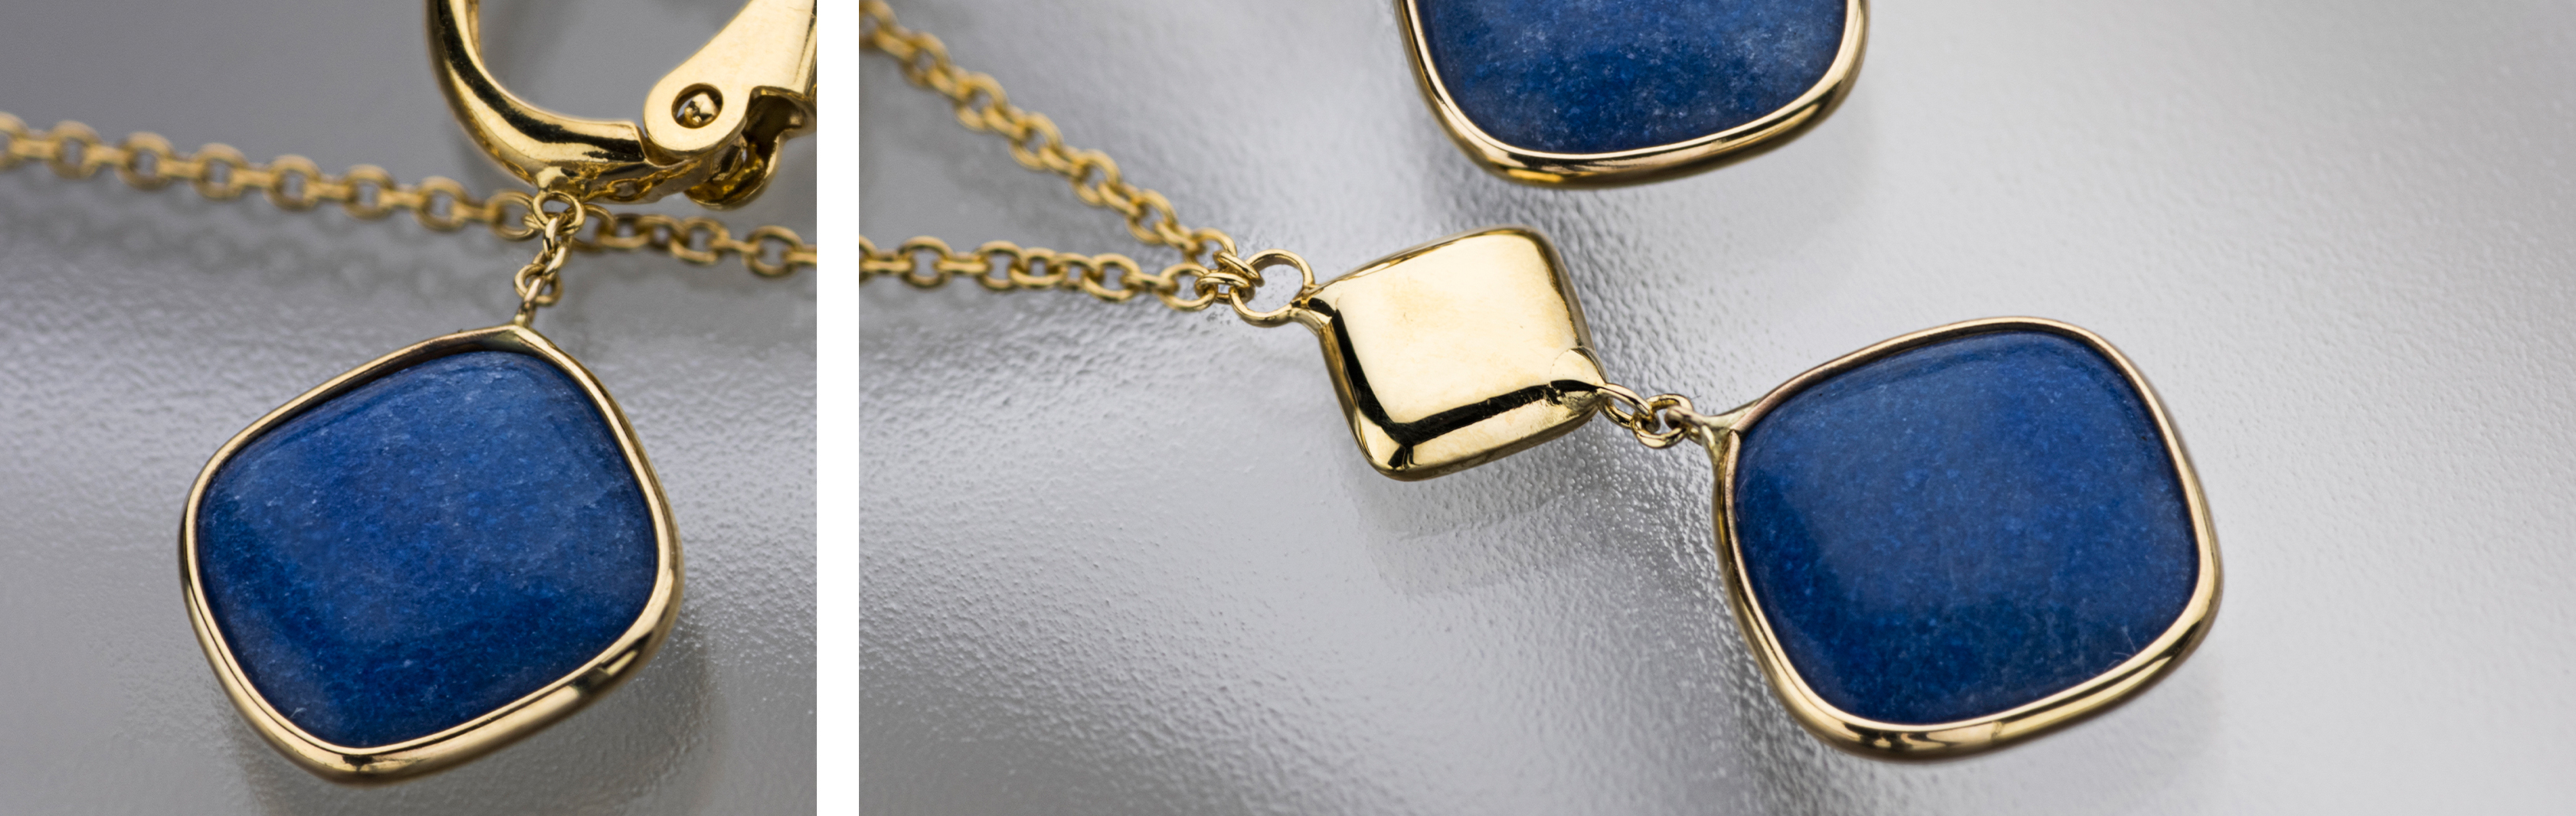 קולקציית סלינה - תכשיטי זהב 14 קראט בשילוב אבני קלצדוניה כחולה